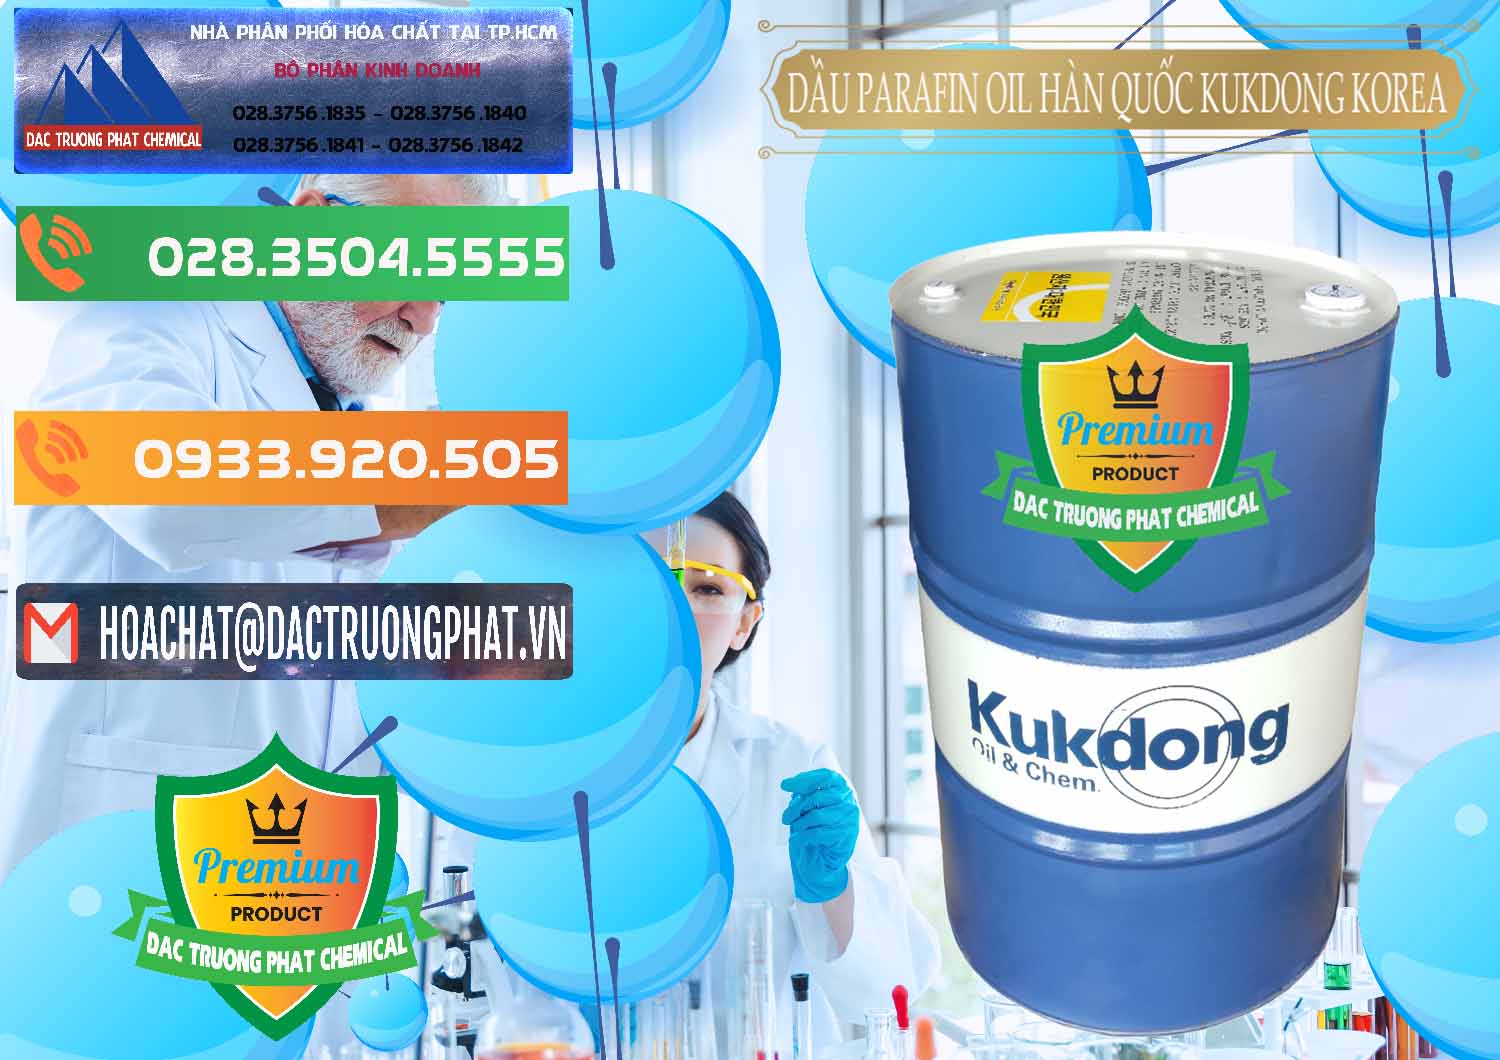 Kinh doanh và bán Dầu Parafin Oil Hàn Quốc Korea Kukdong - 0060 - Công ty chuyên phân phối - cung ứng hóa chất tại TP.HCM - hoachatxulynuoc.com.vn